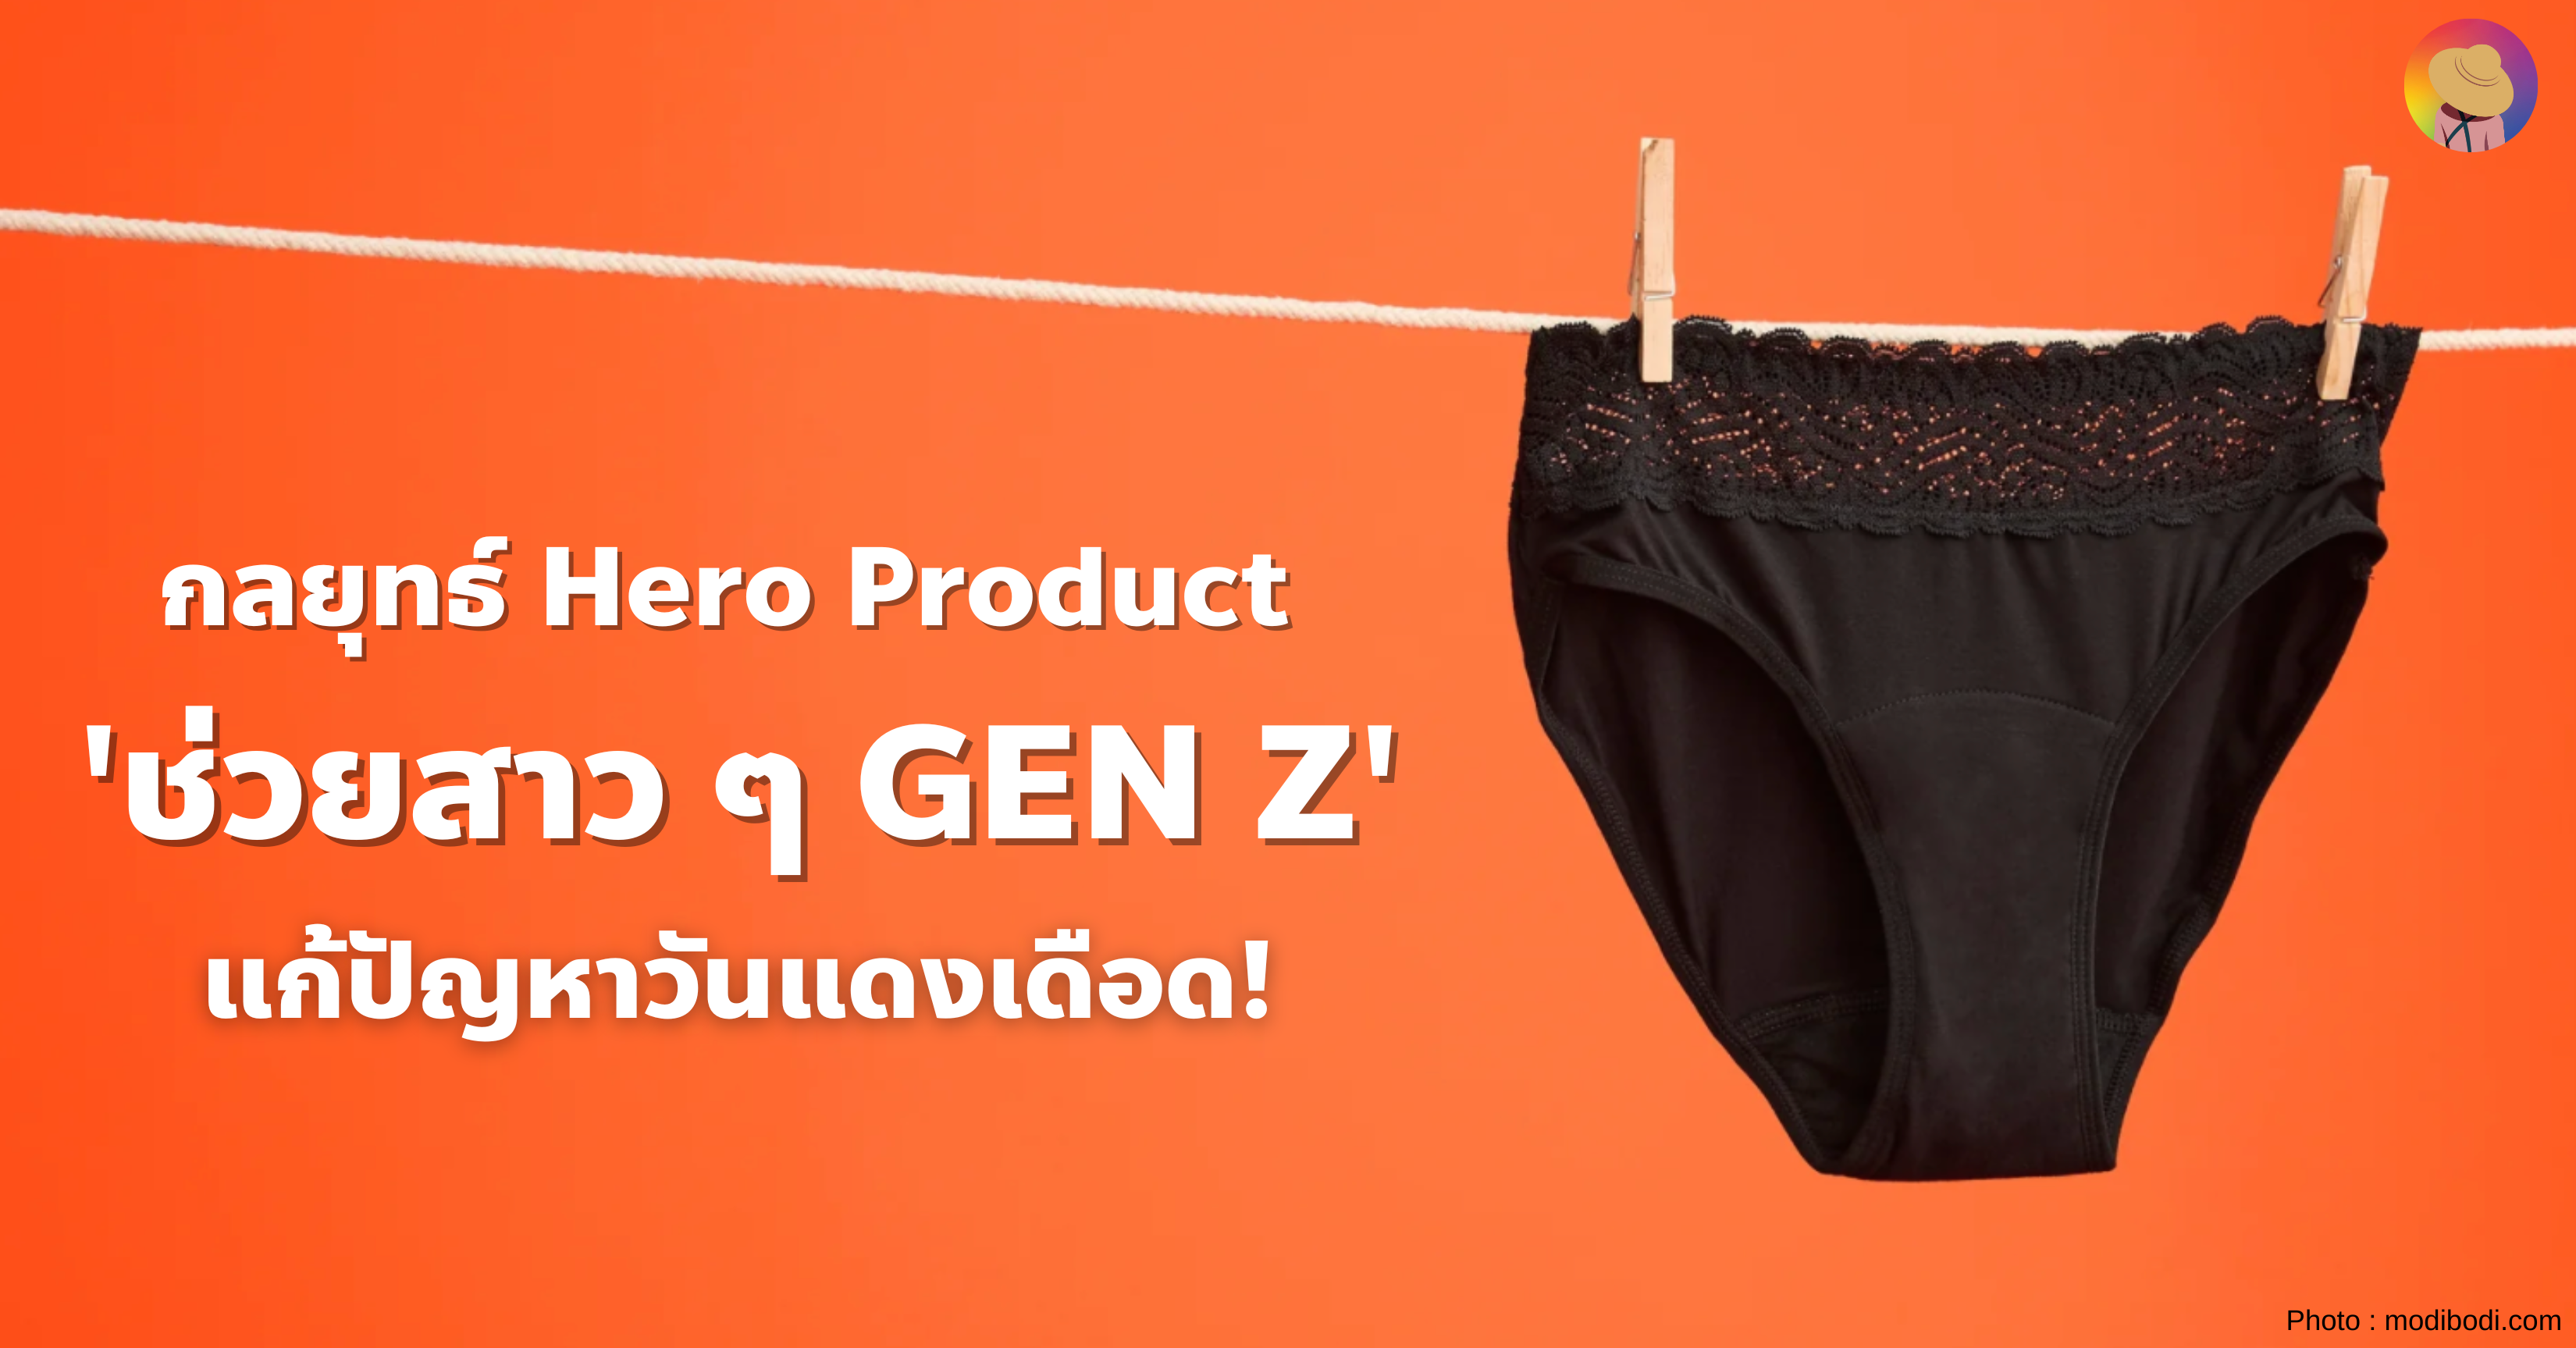 กลยุทธ์ Hero Product ช่วยสาว ๆ GEN Z แก้ปัญหาวันแดงเดือด